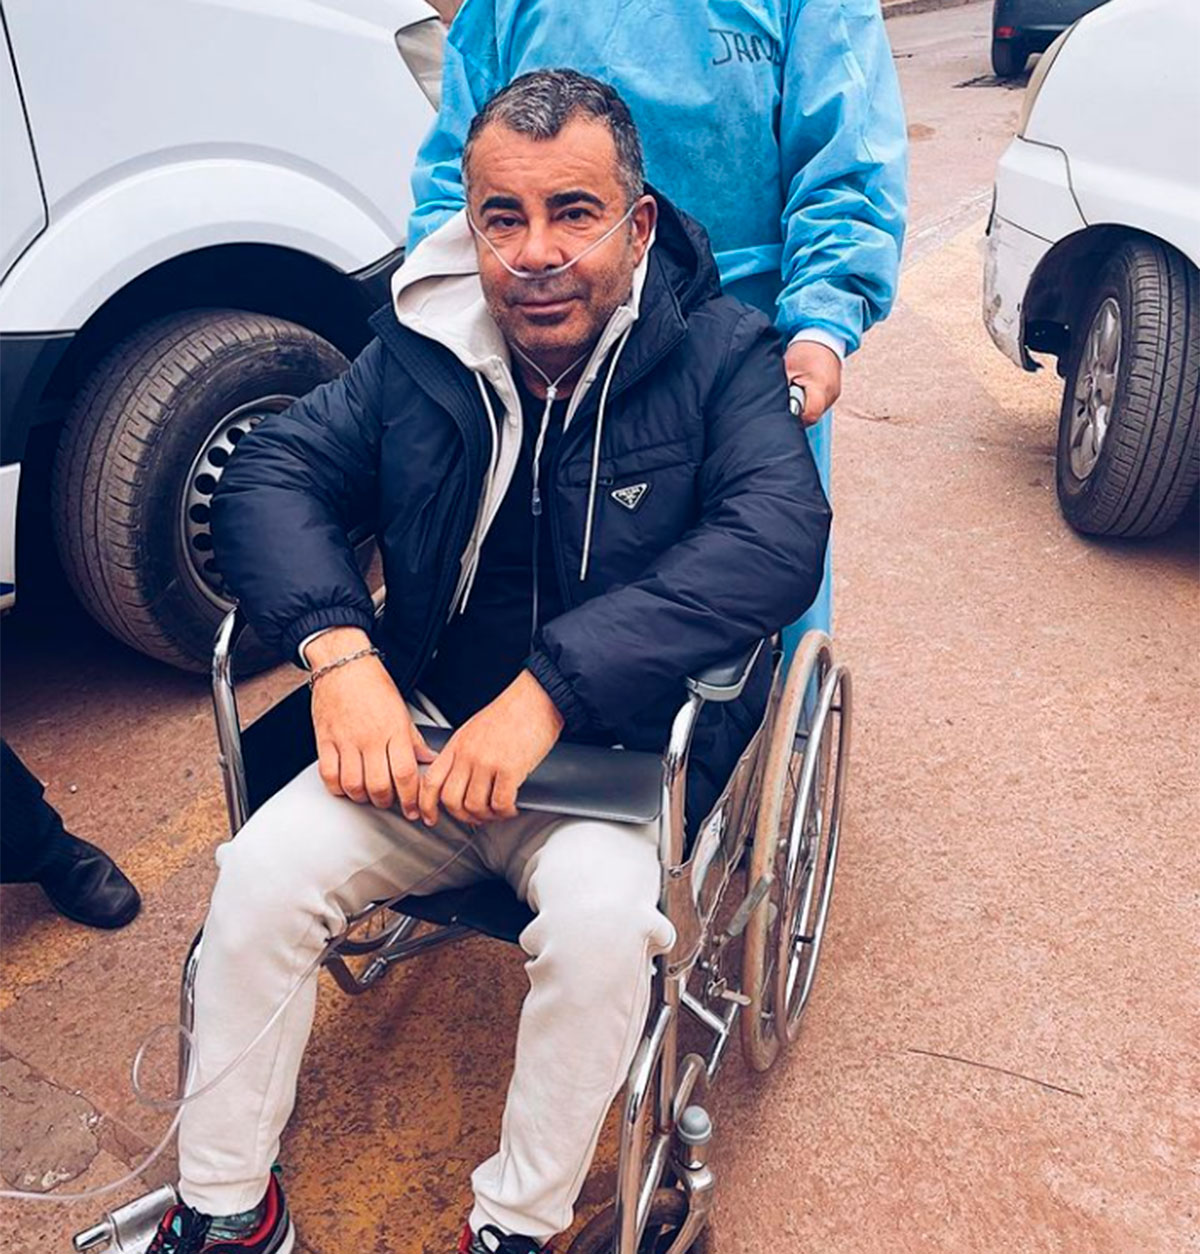 Primeras palabras Jorge Javier Vázquez tras ser hospitalizado por mal de altura: "No podía con mi vida"